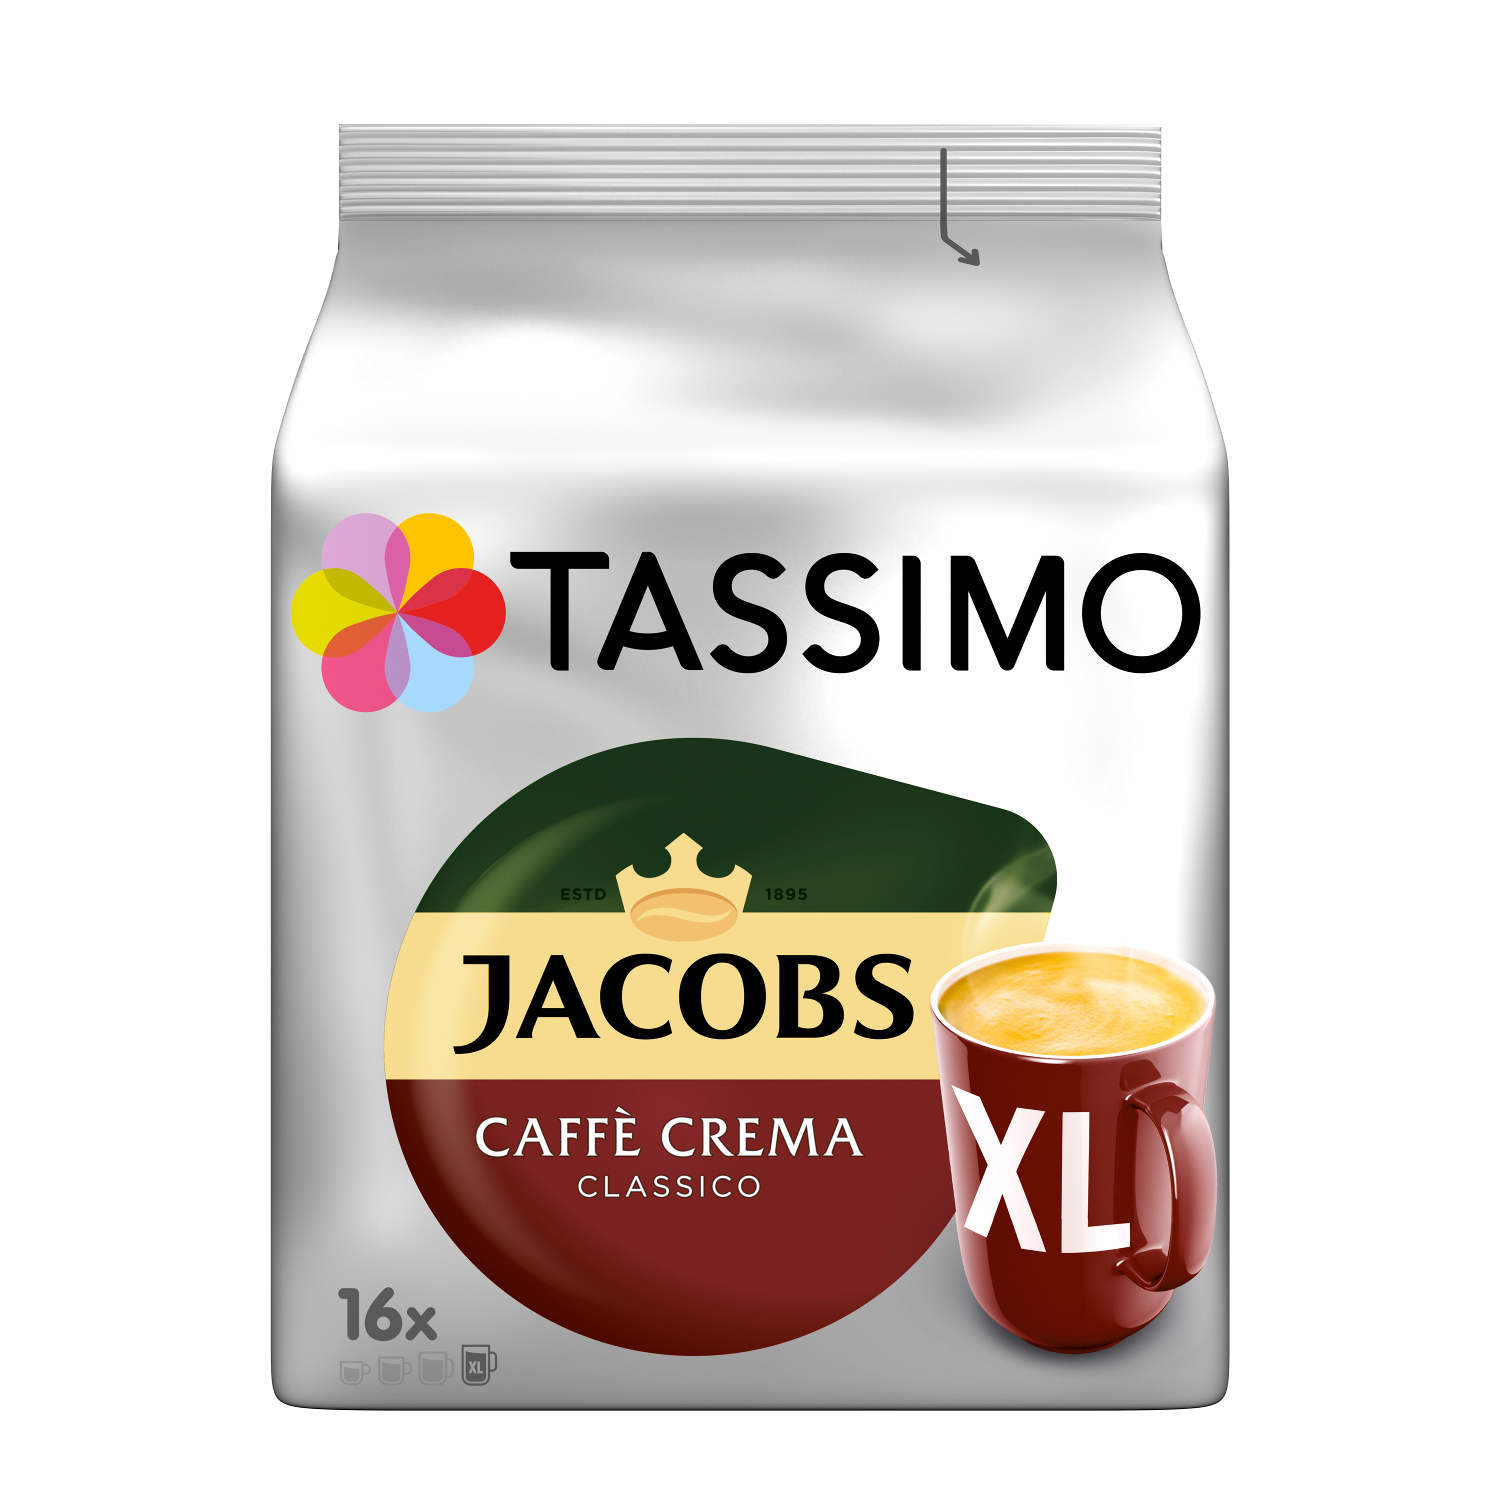 TASSIMO Vielfaltspaket Mild Kaffeekapseln System)) 5 Morning (T-Disc Becherportionen (Tassimo Krönung Maschine Crema Sorten XL Intenso Café